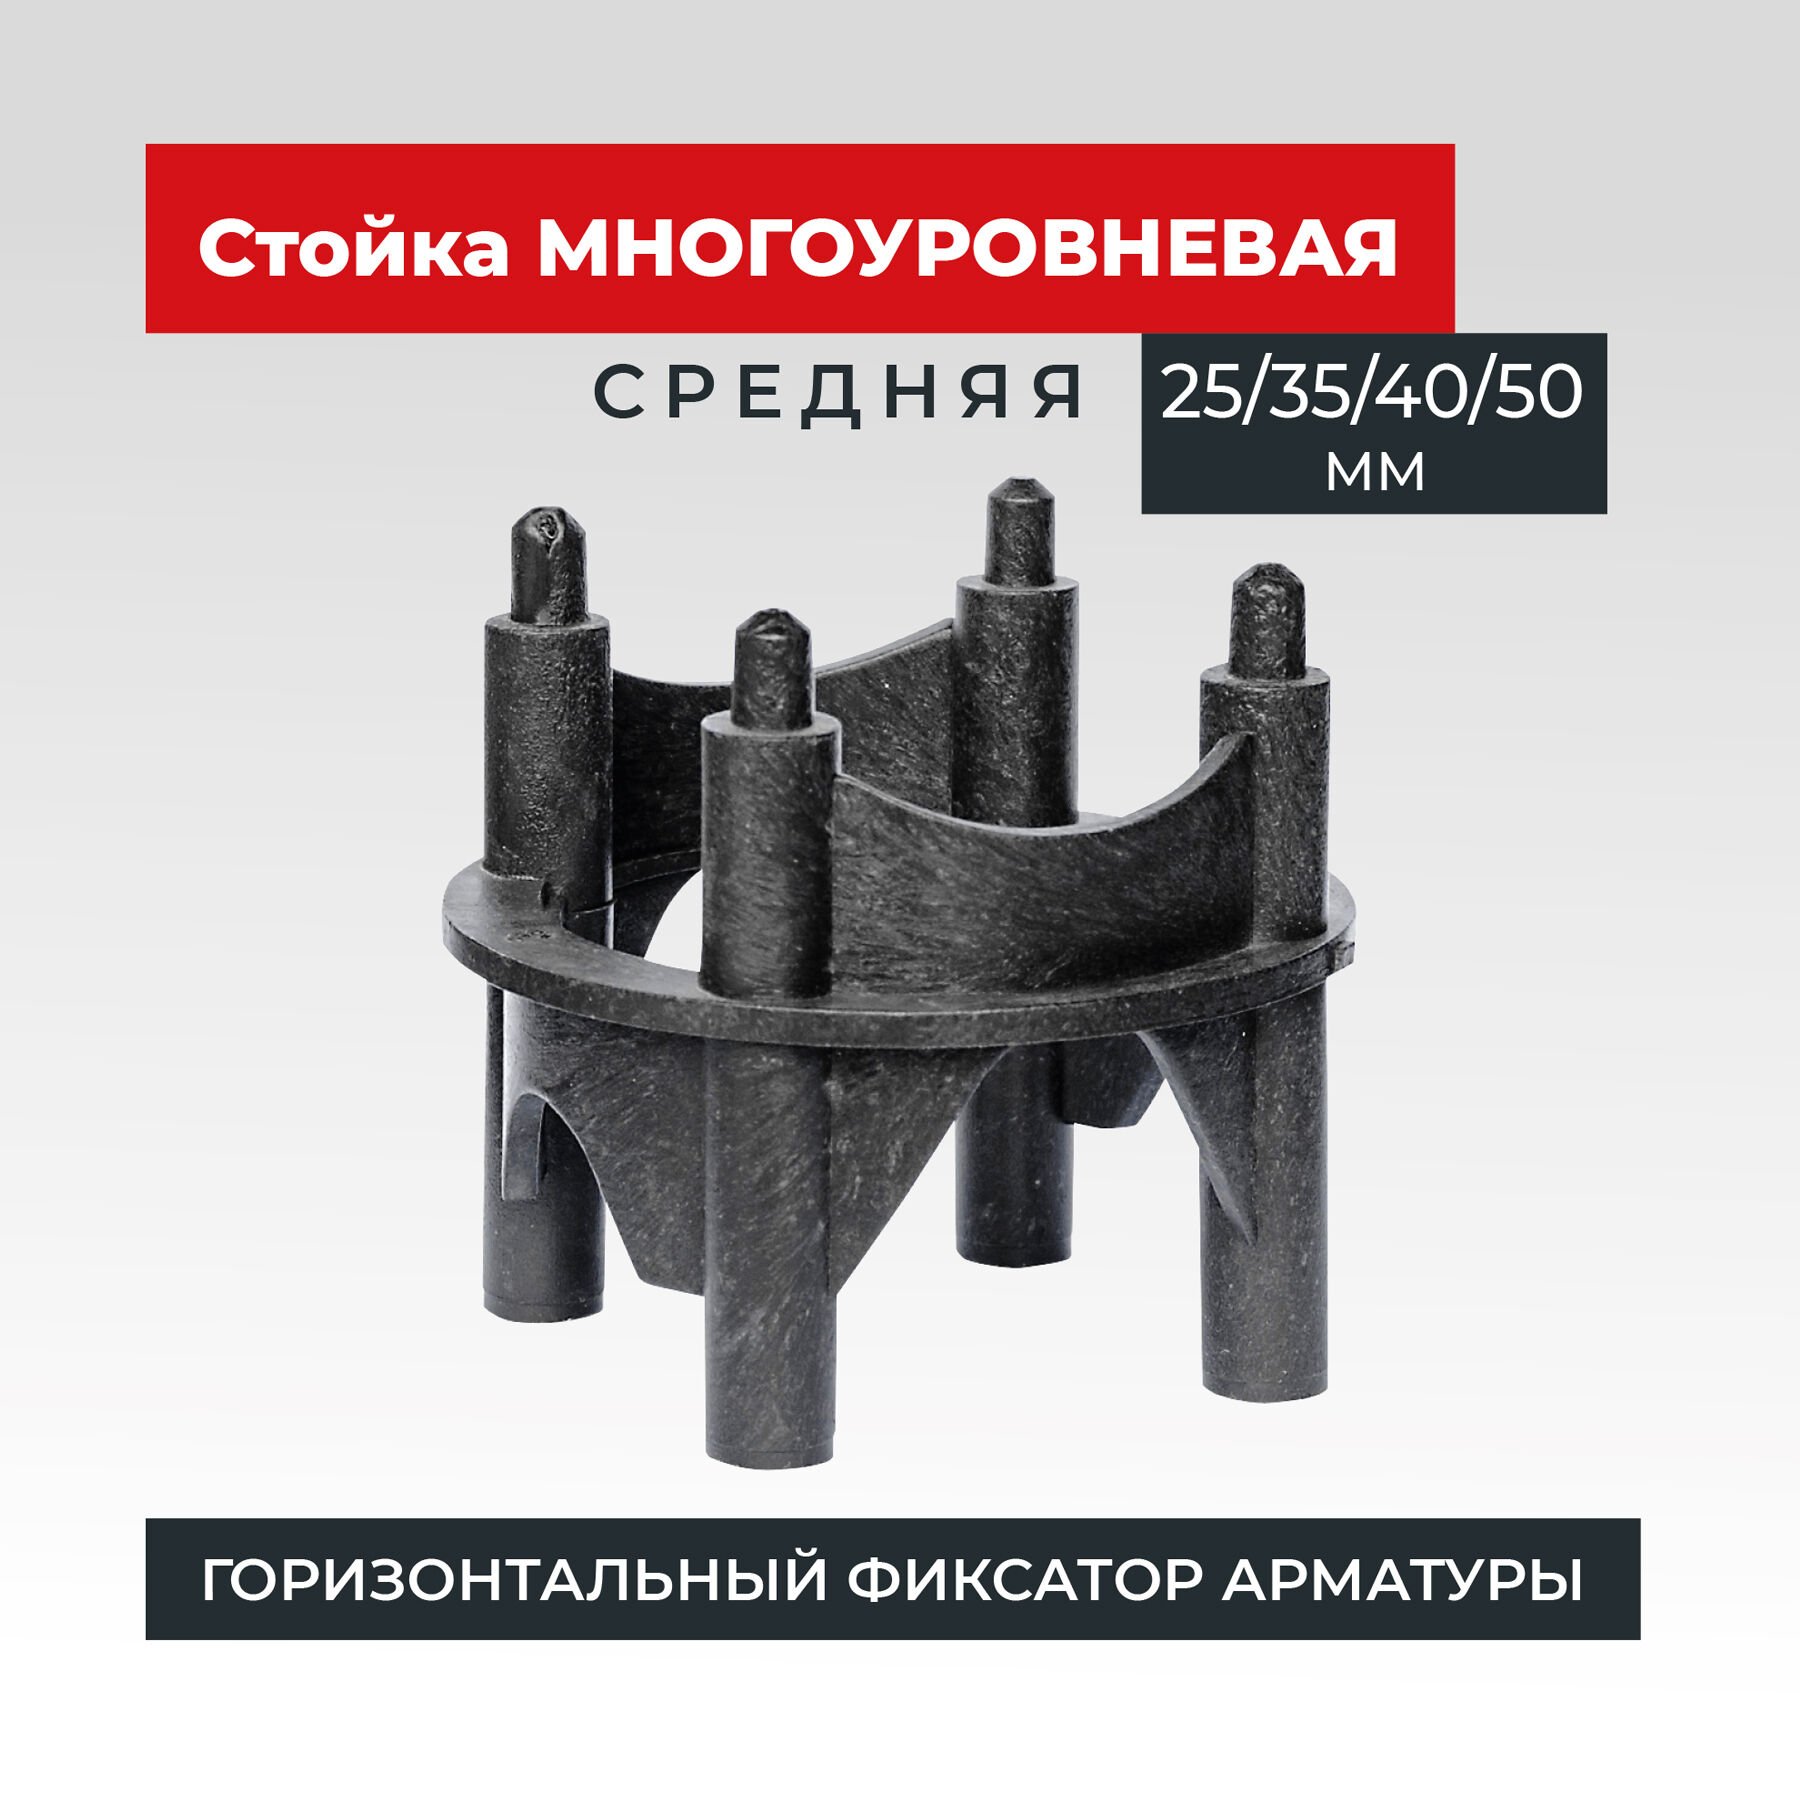 Фиксатор арматуры Промышленник многоуровневый 25/35/40/50 упаковка 250 шт.